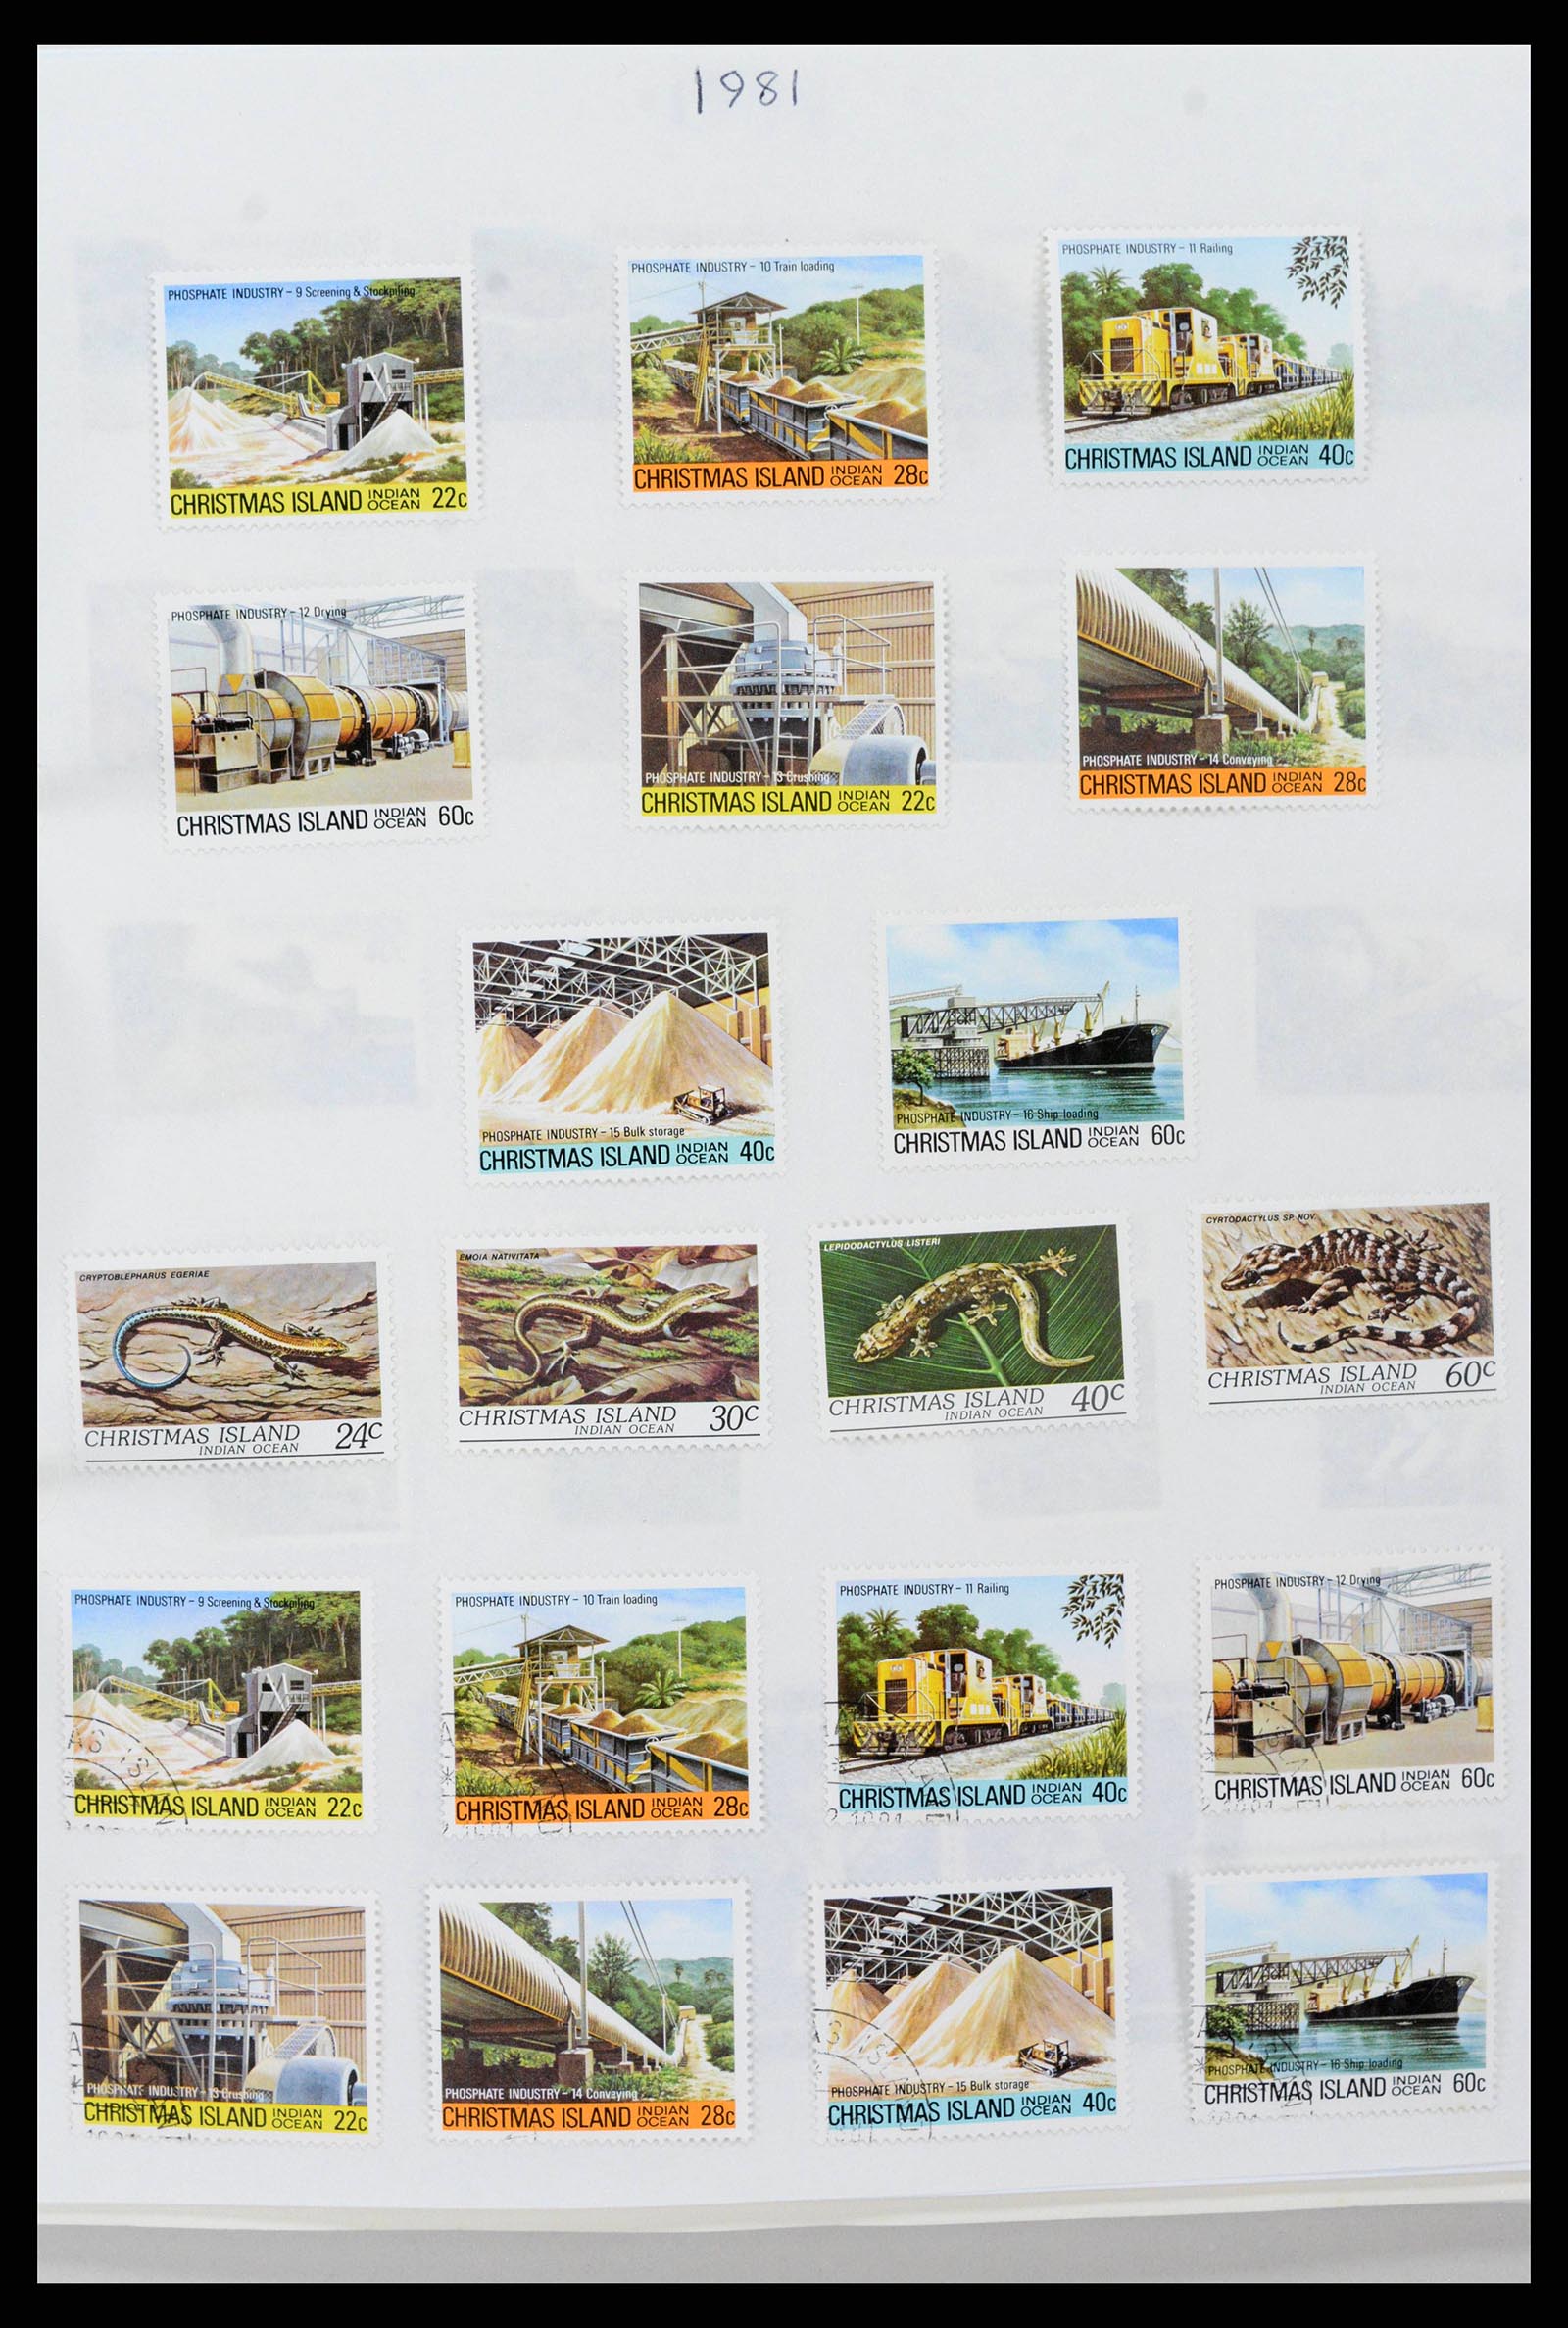 38256 0018 - Stamp collection 38256 Christmas Island 1958-2006.